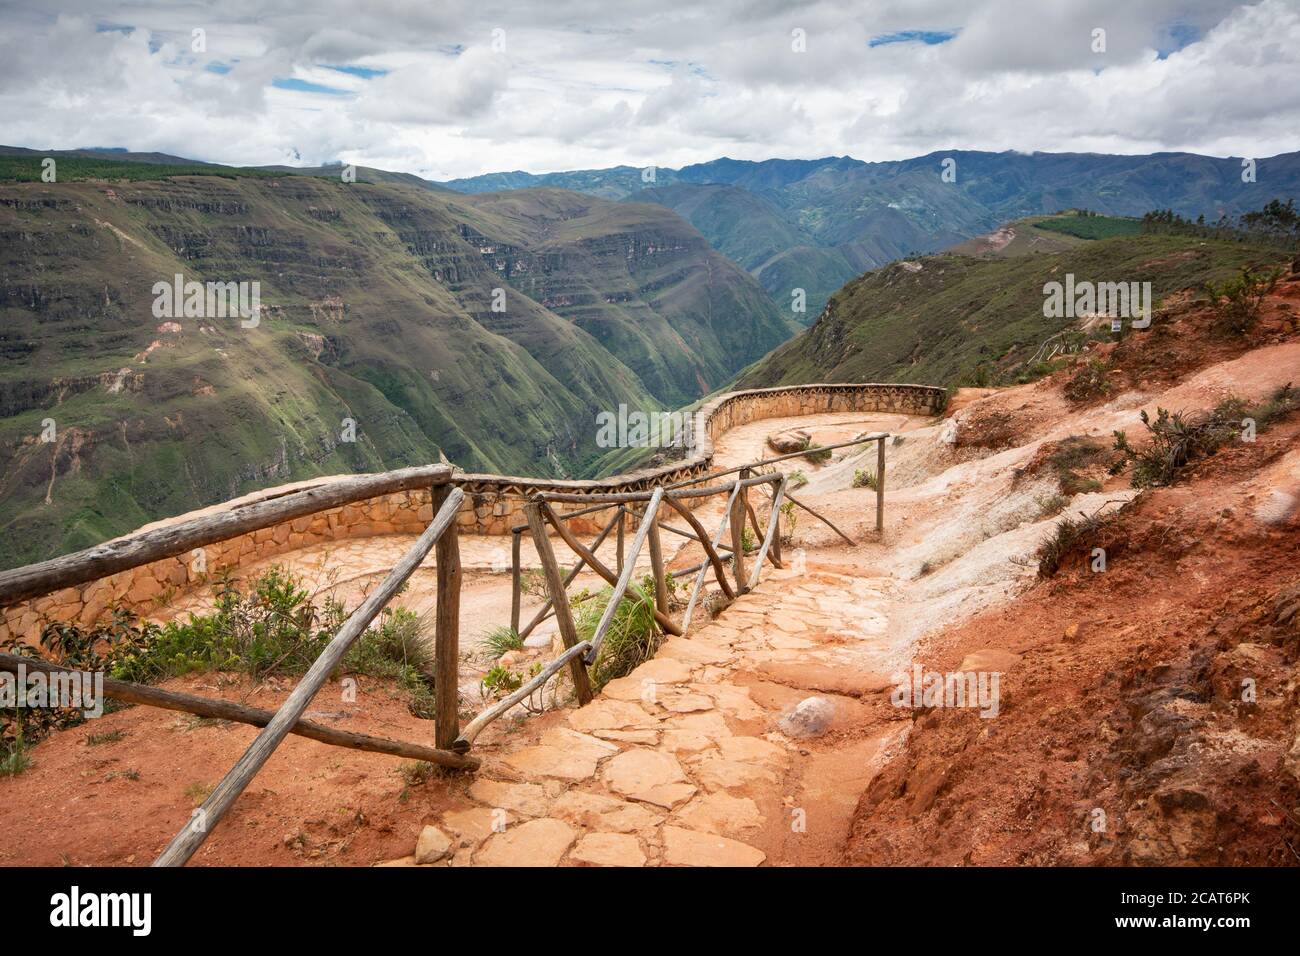 L'argile rougeâtre caractéristique de Huancas sur le chemin de Le point de vue sur le Canyon de Sonche près de Chachapoyas Dans Amazonas nord du Pérou Banque D'Images